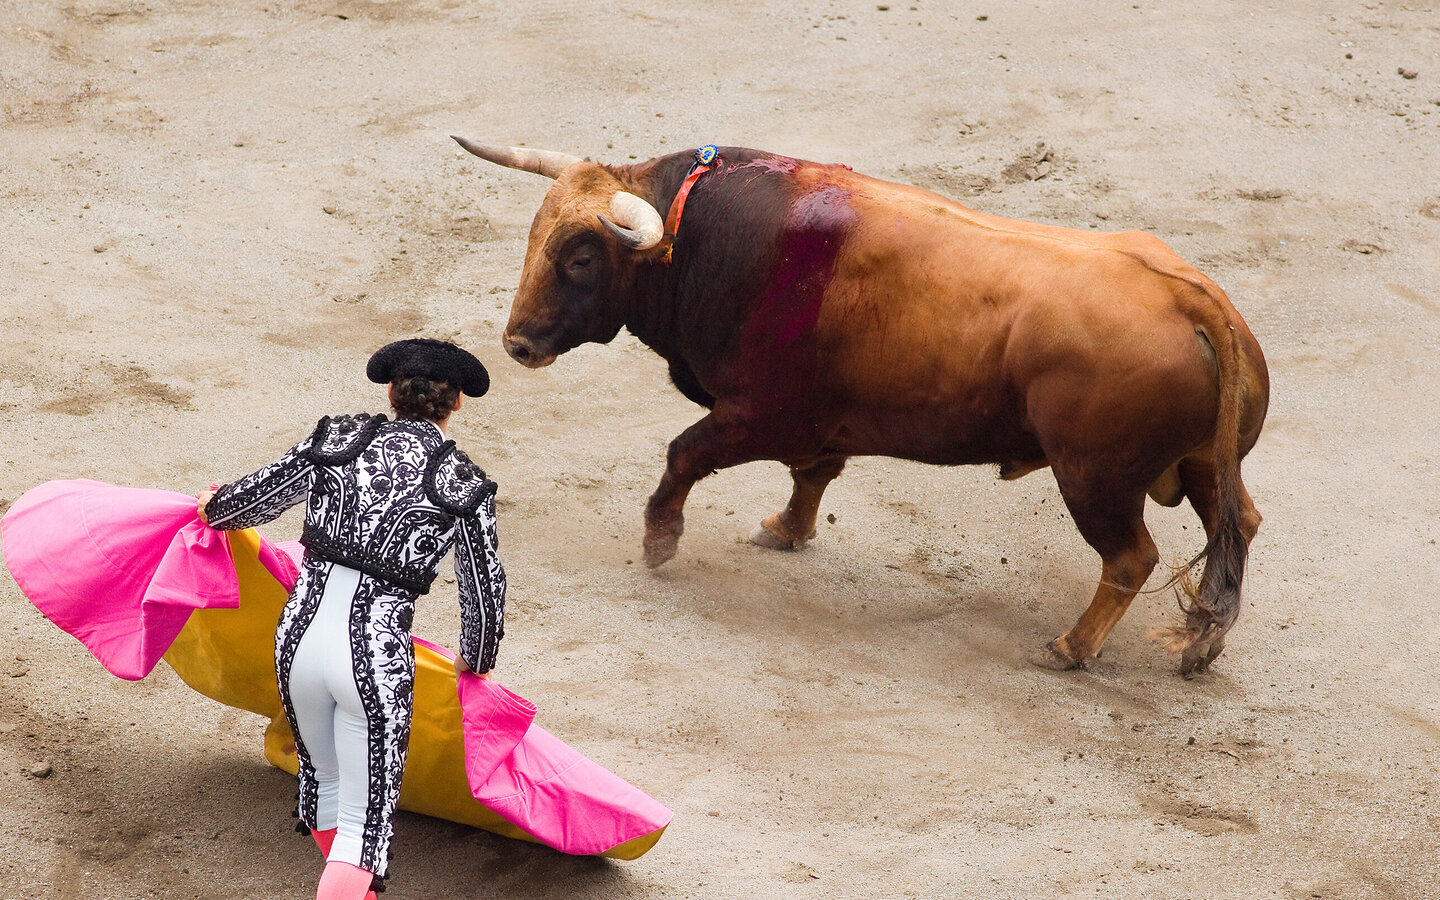 Stierkampf. Mann mit pinker Decke vor Stier stehend.